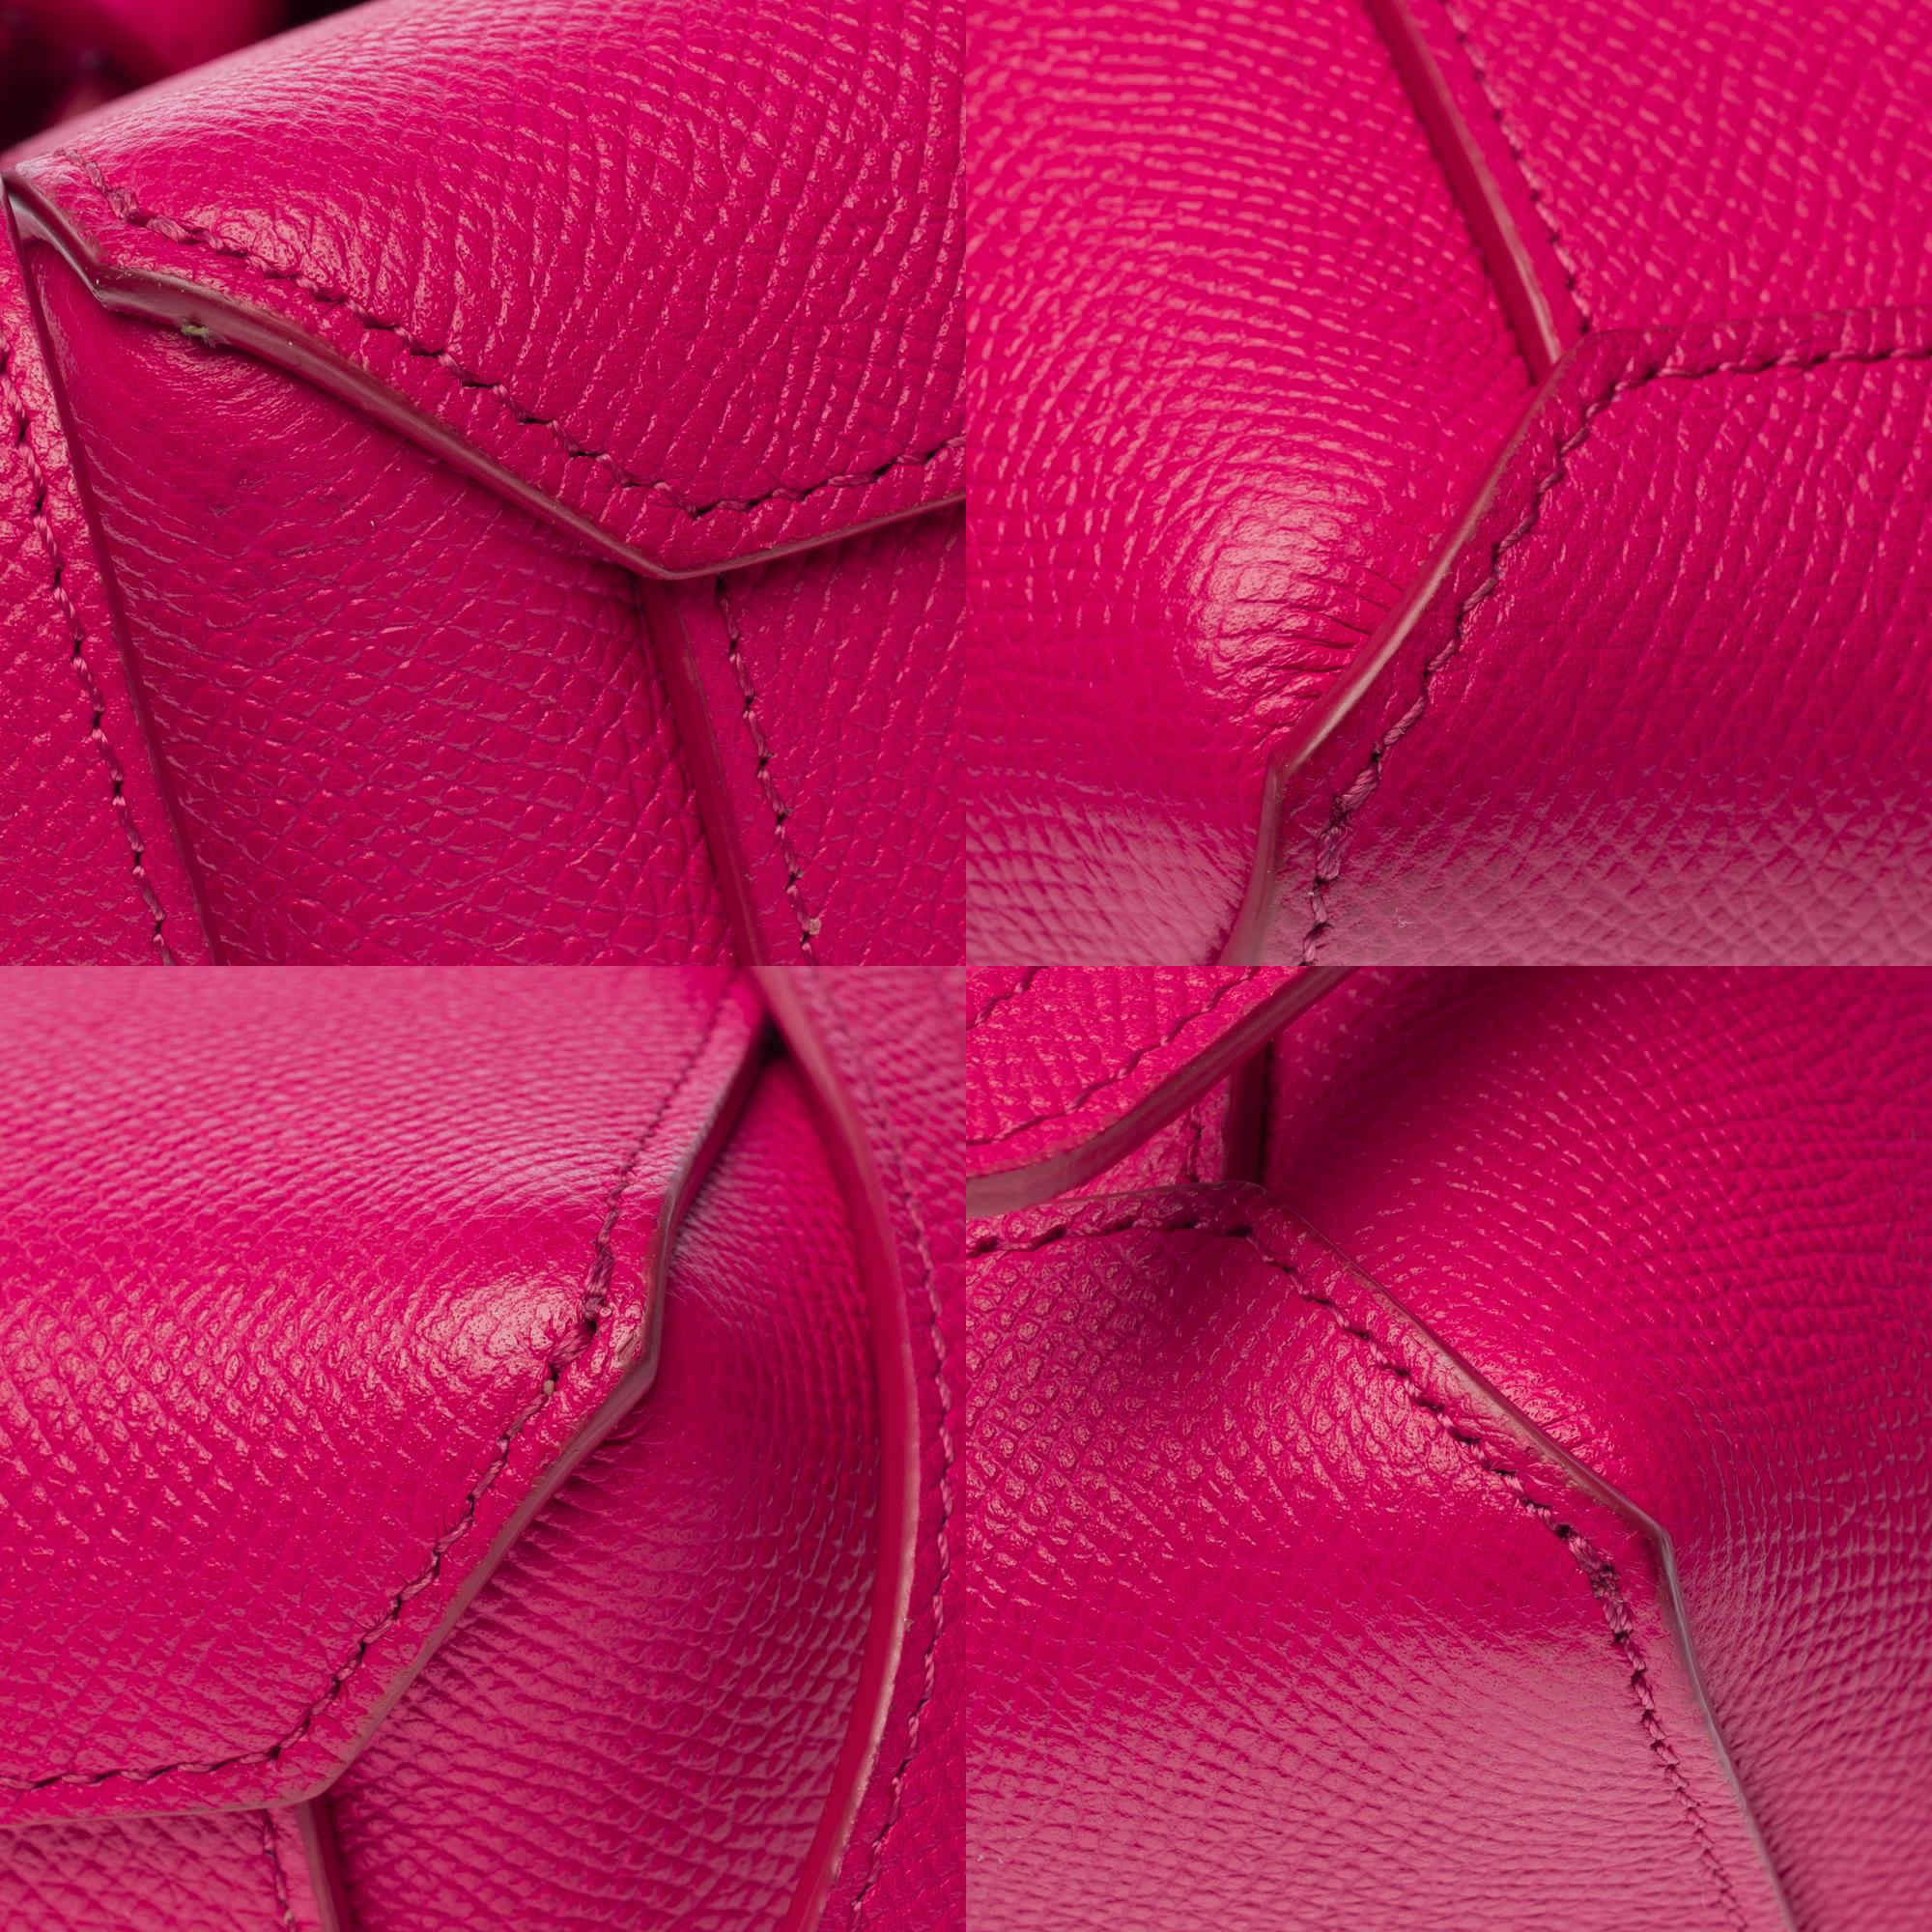 Celine Belt Nano handbag strap in pink calf leather, GHW 8